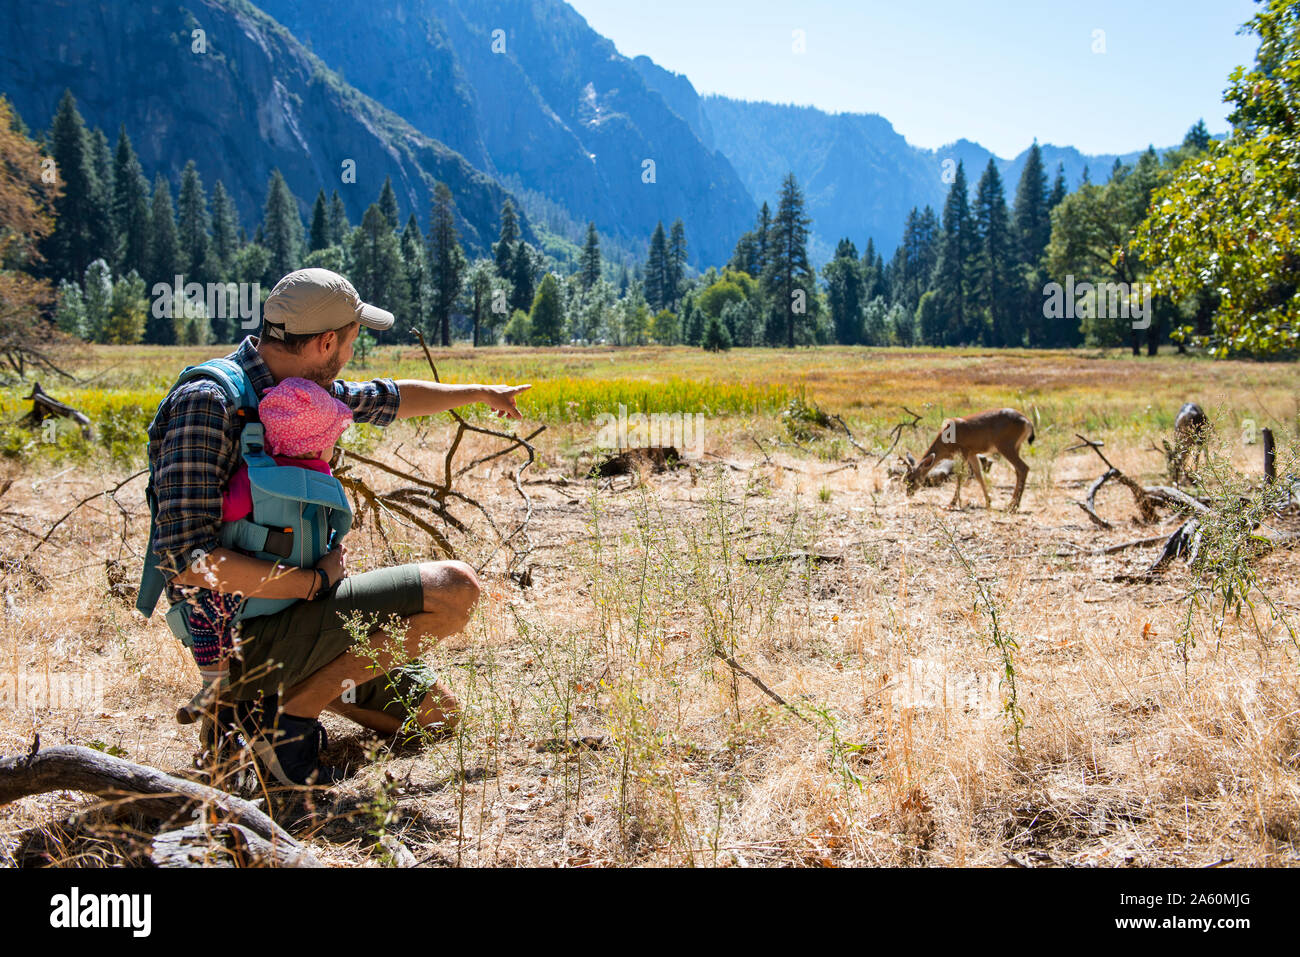 Vater und Baby Mädchen beobachten Maultier Rehe zusammen, Yosemite National Park, Kalifornien, USA Stockfoto